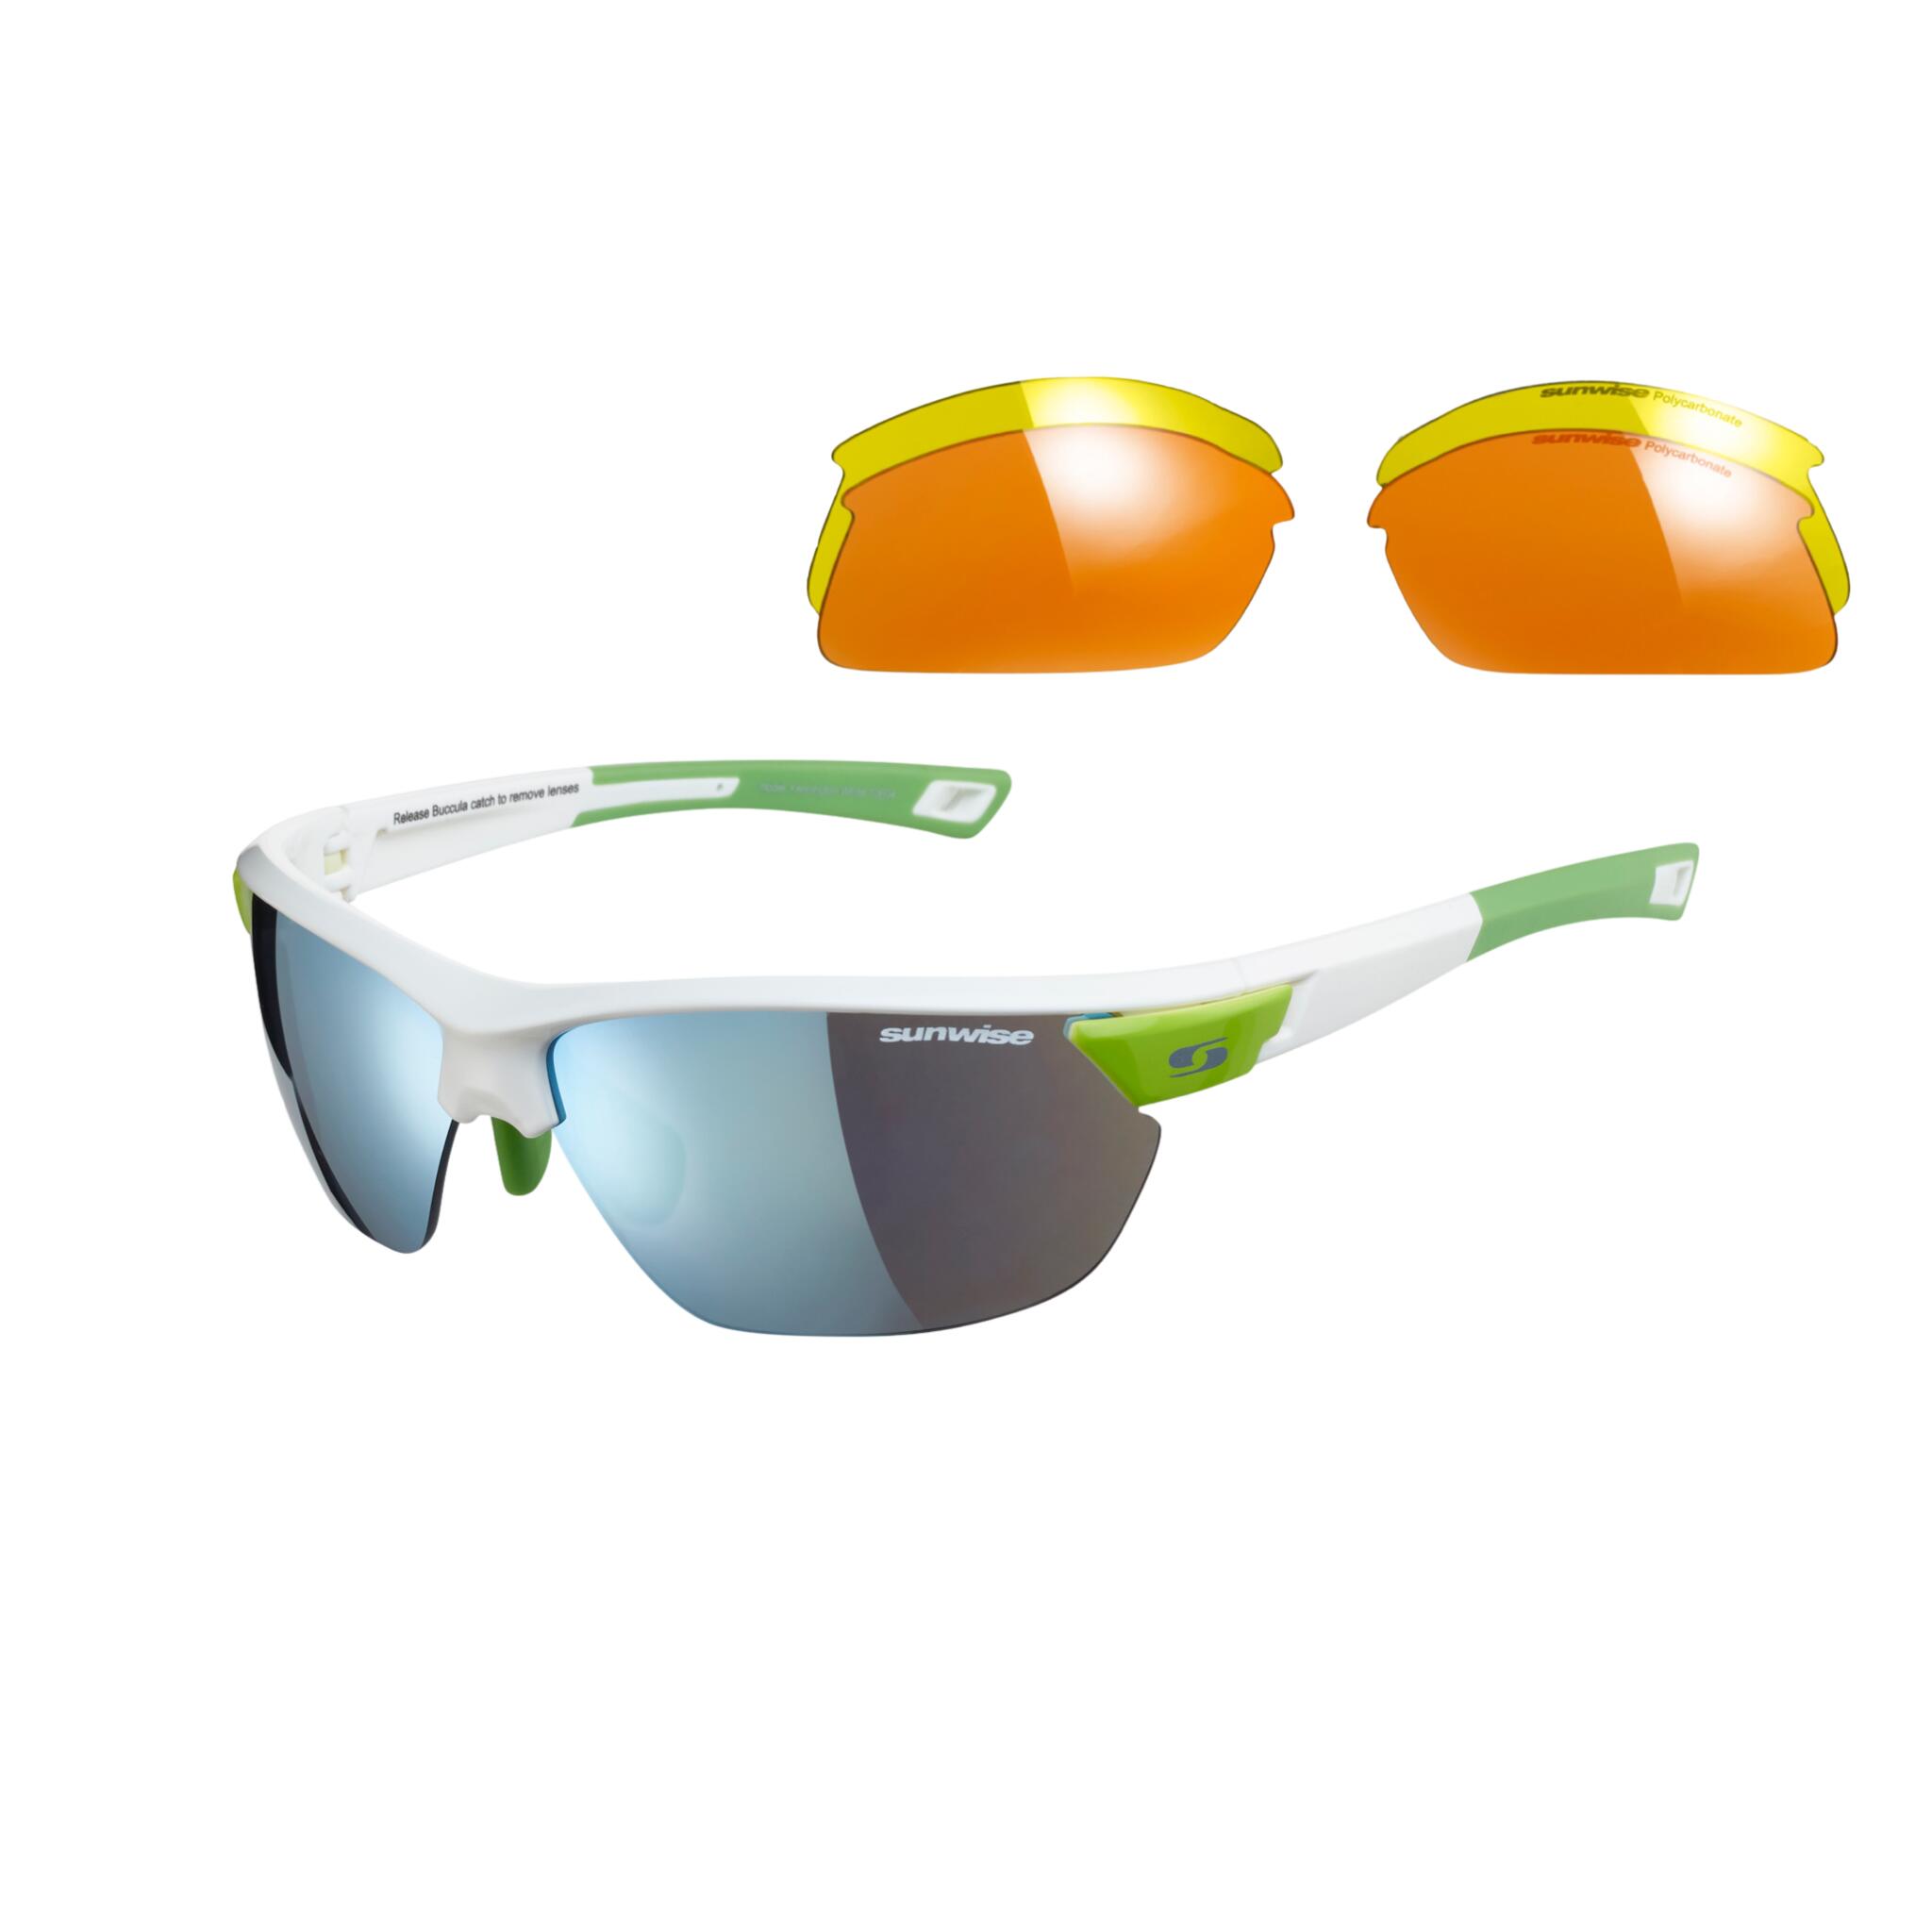 SUNWISE Kennington Sports Sunglasses - Category 1-3